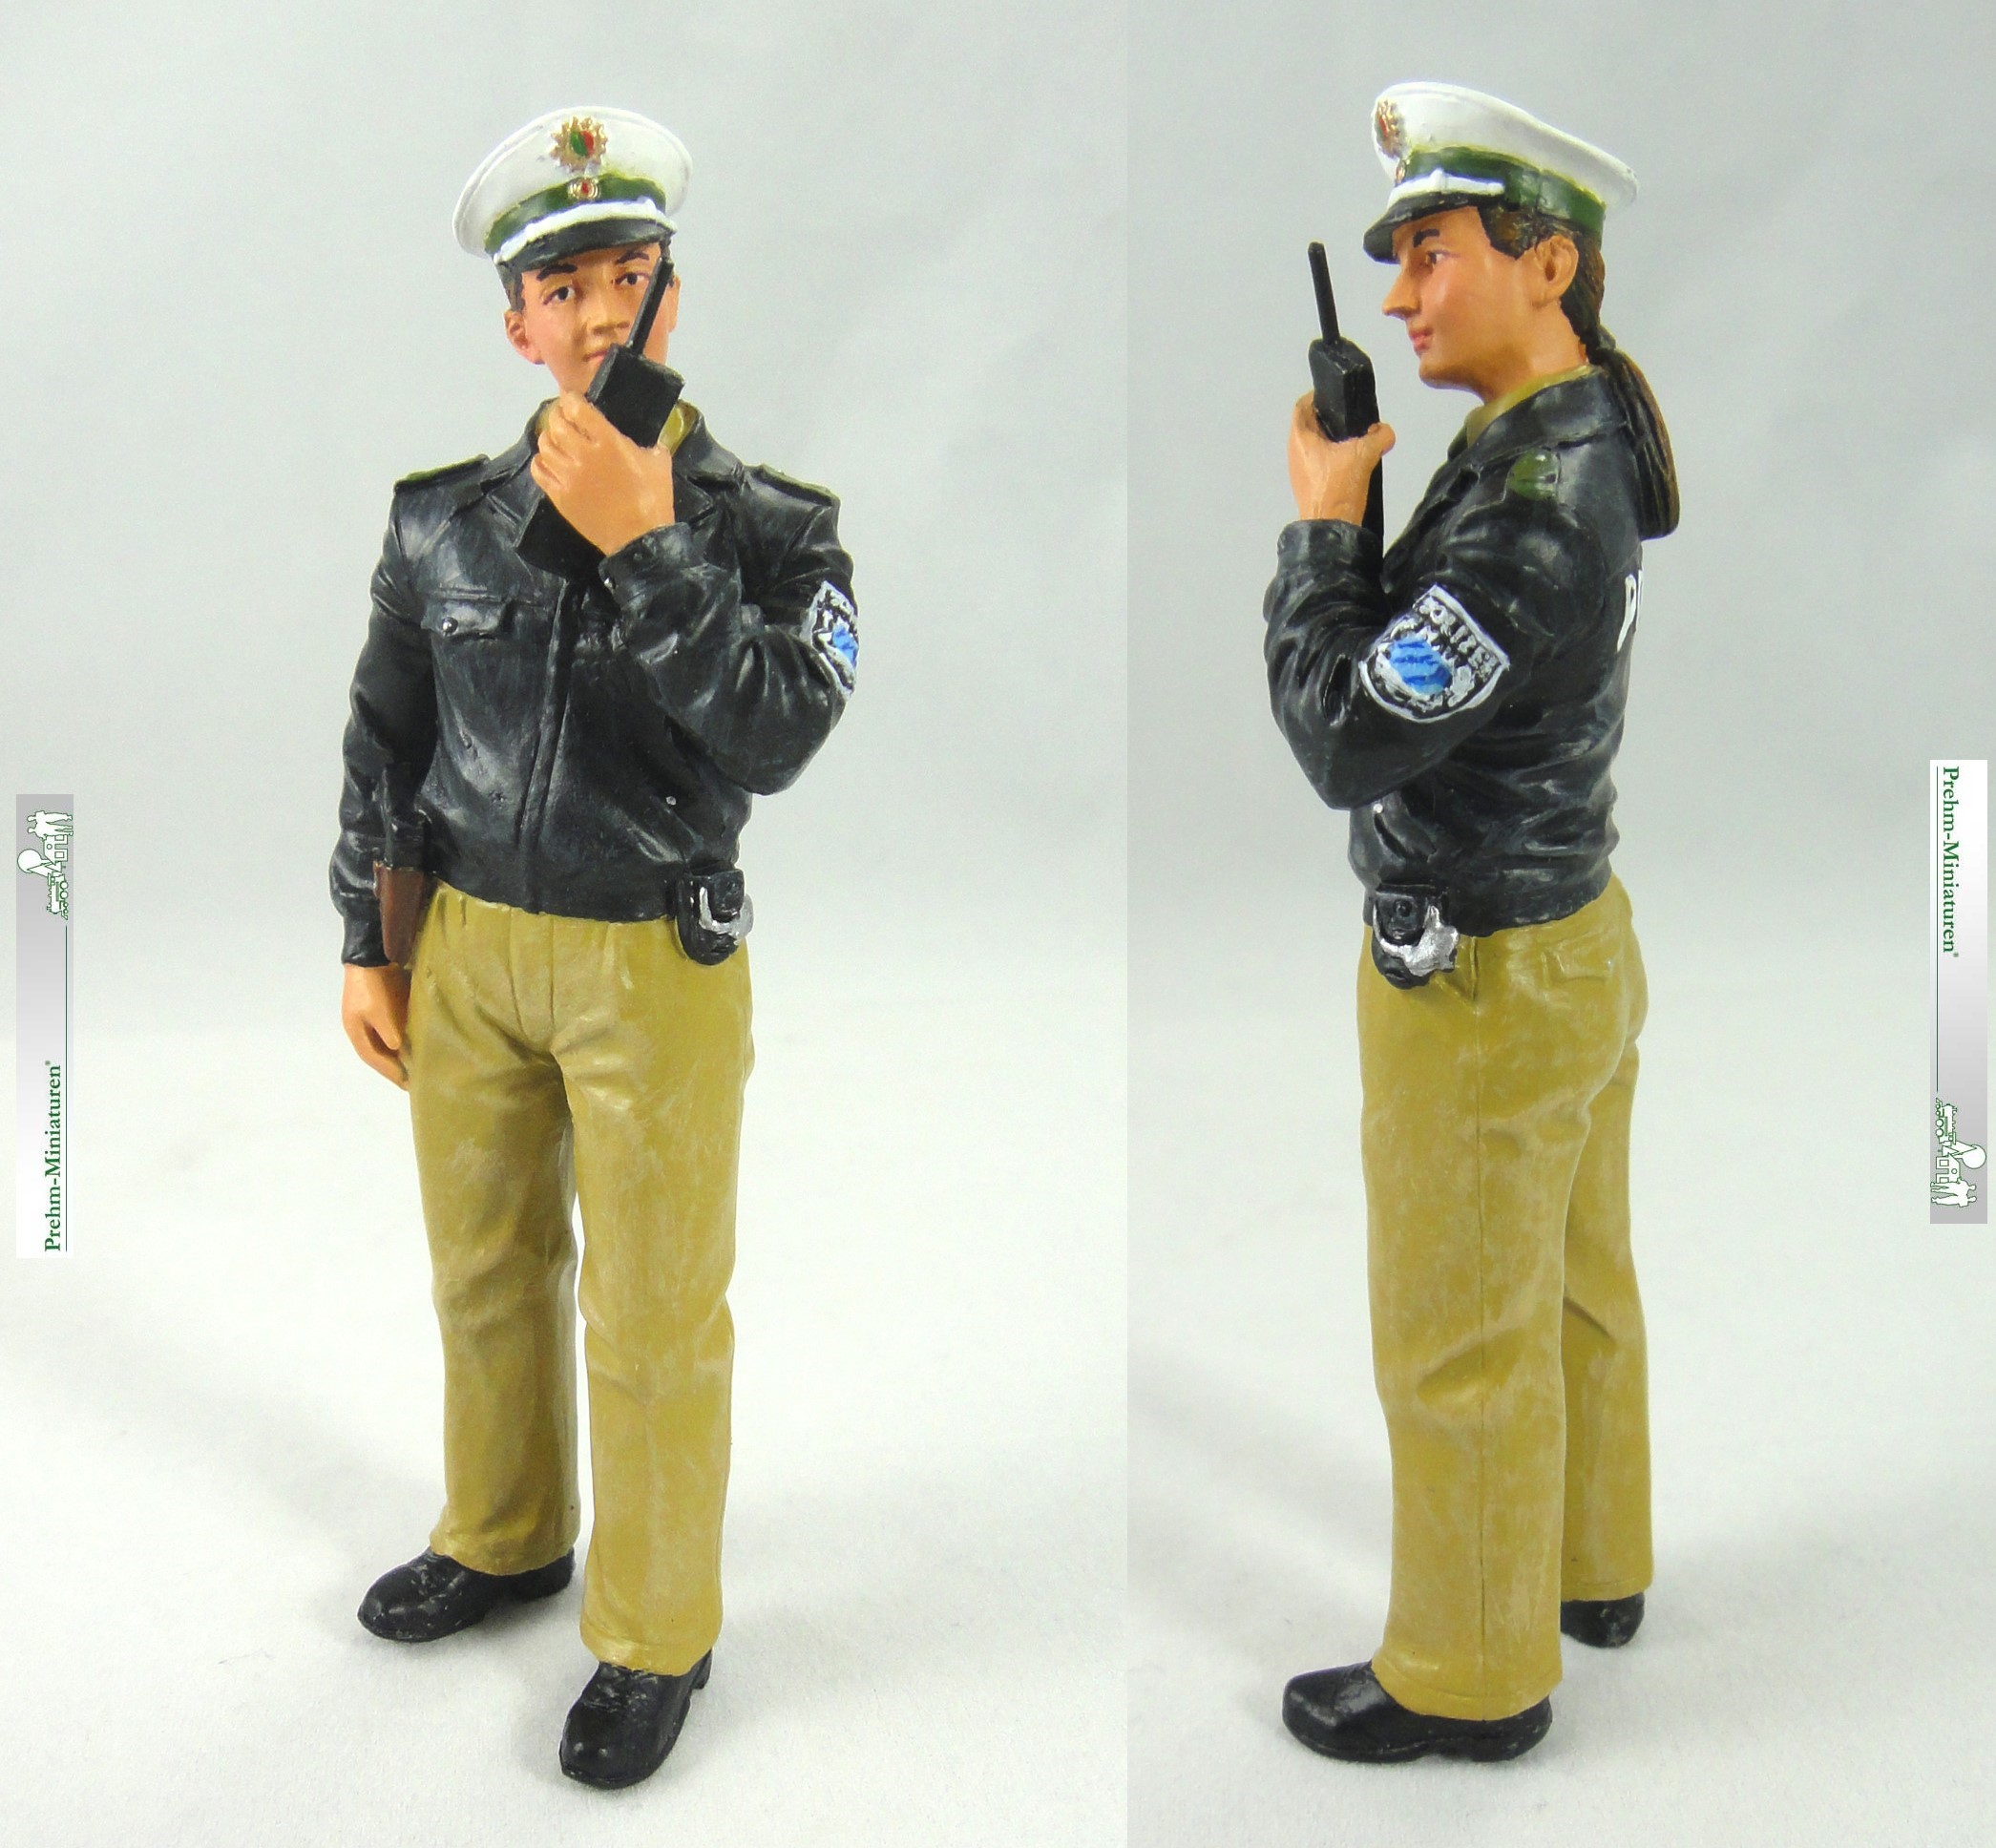 Polizistin, grne Uniform mit Funkgert - Metallfigbur - handbemalt